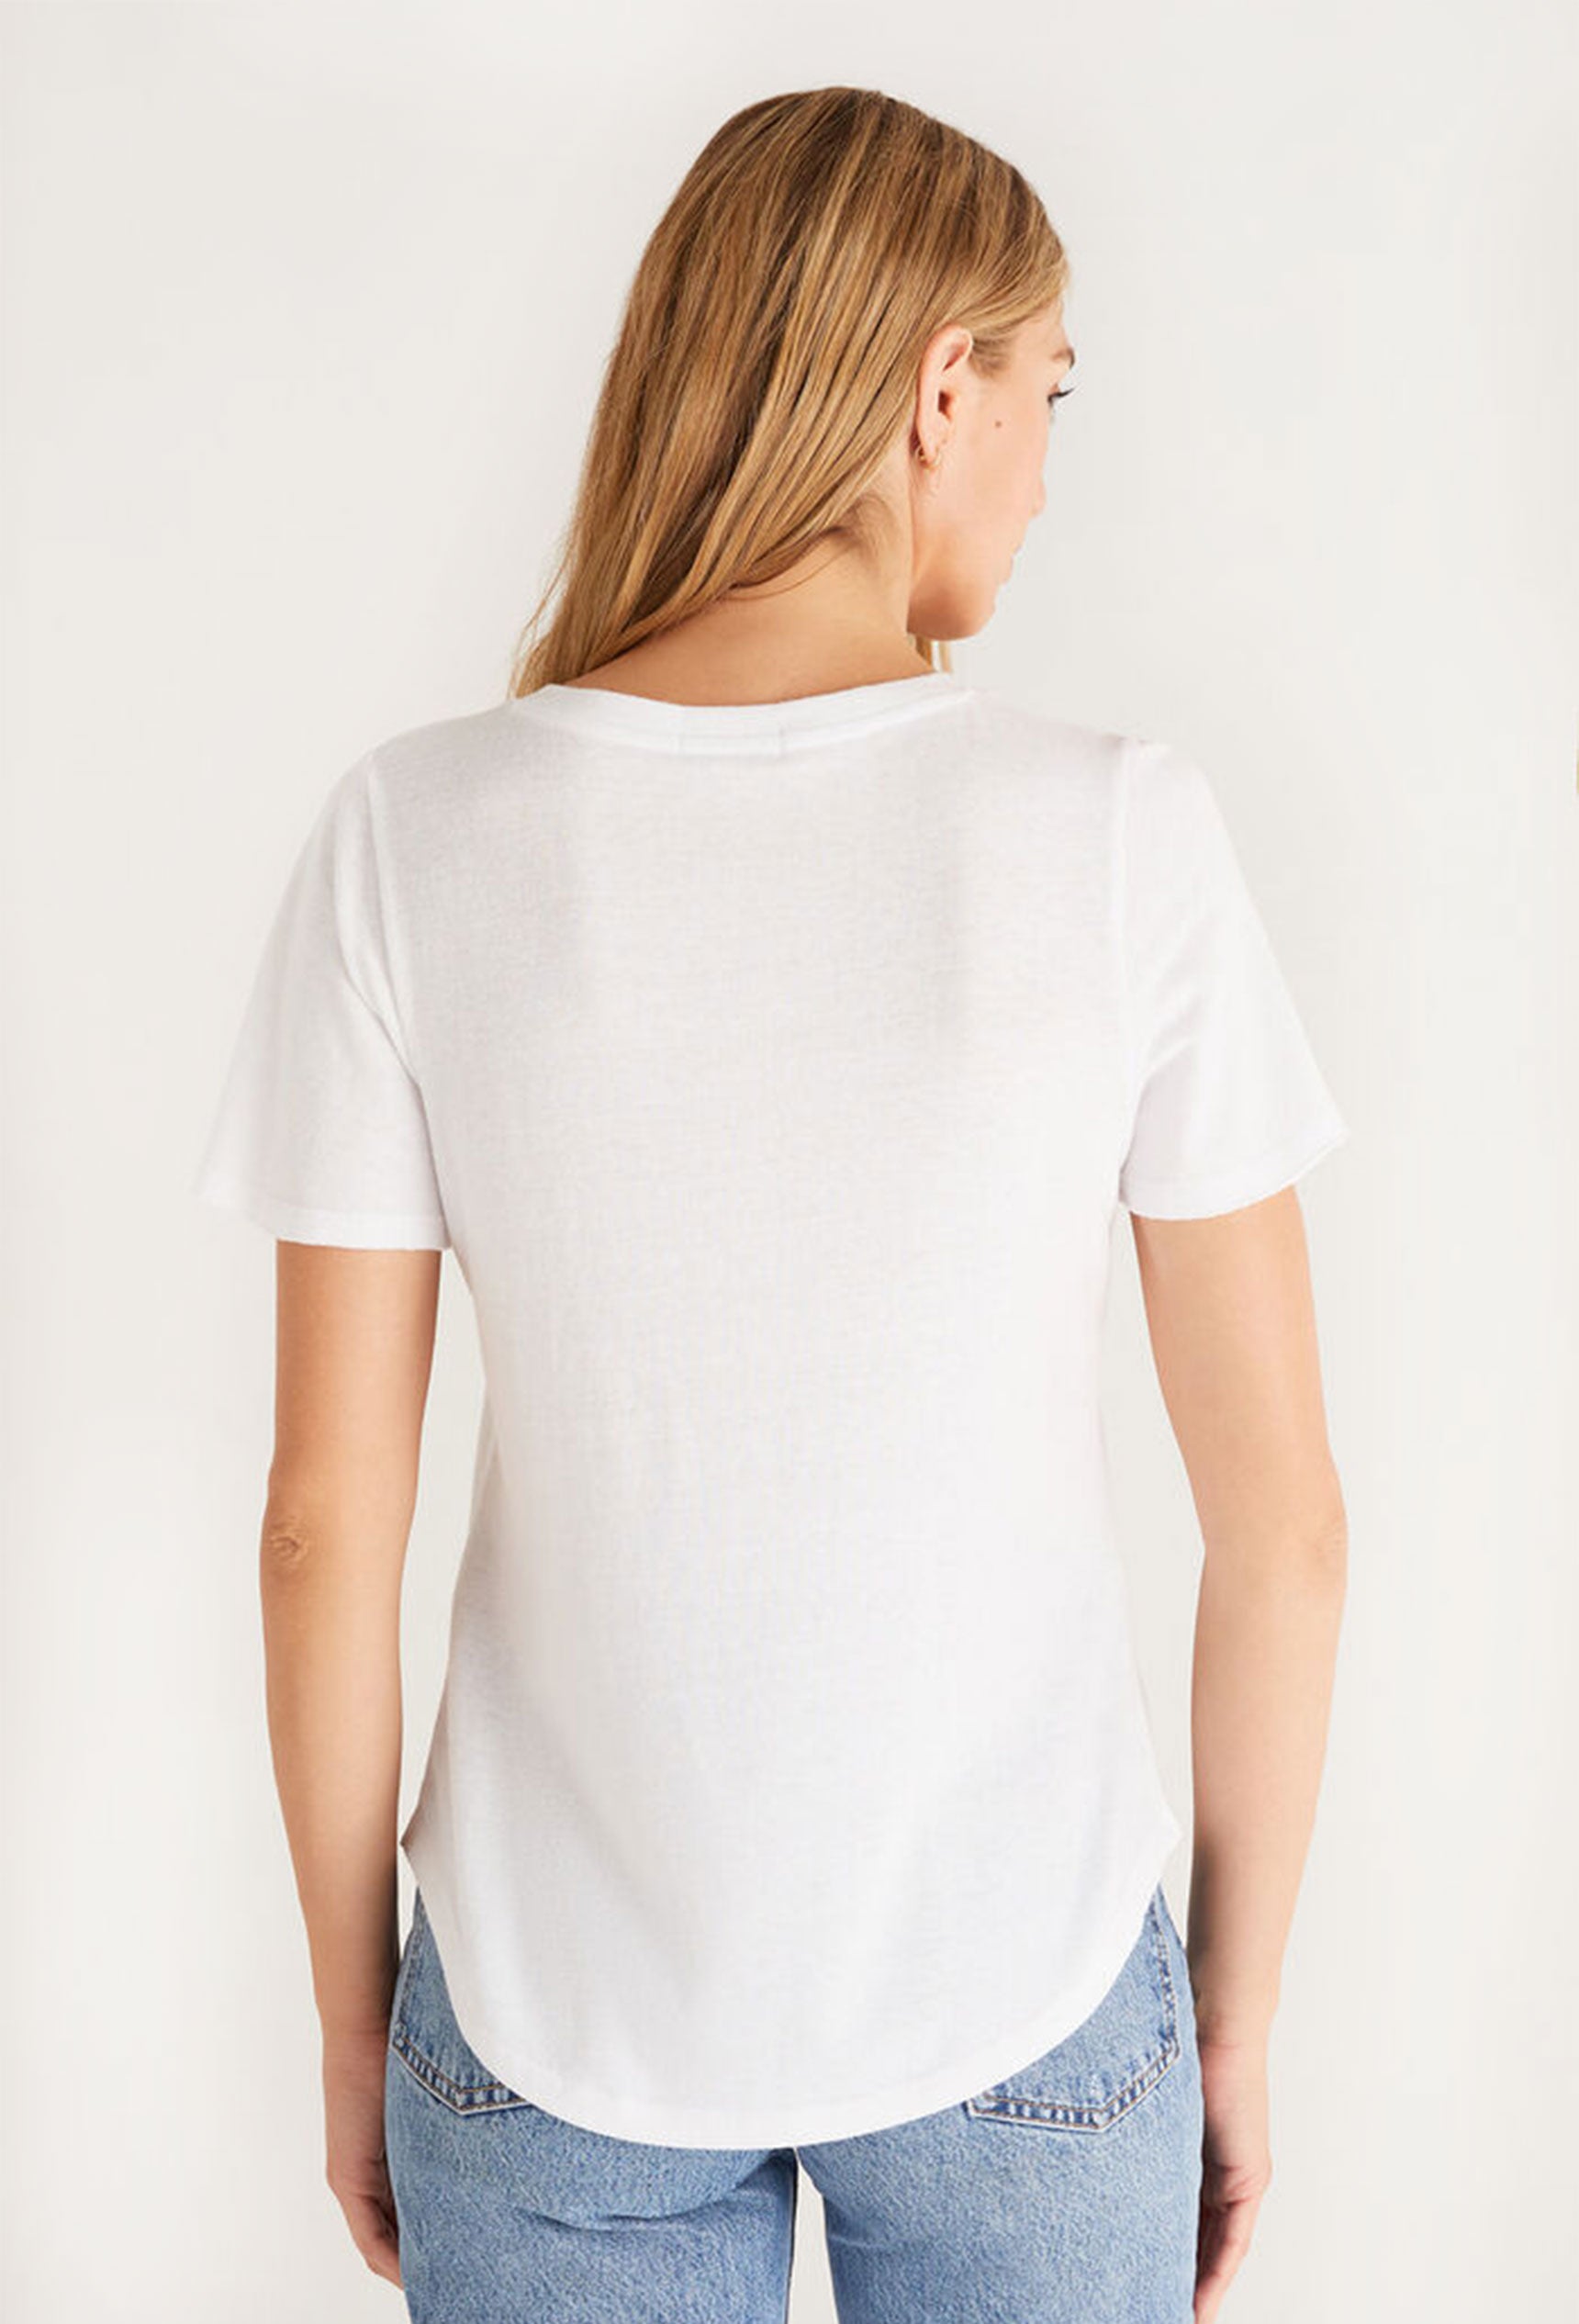 Z SUPPLY Fallon Flutter Tee in White, white v-neck short sleeve t-shirt